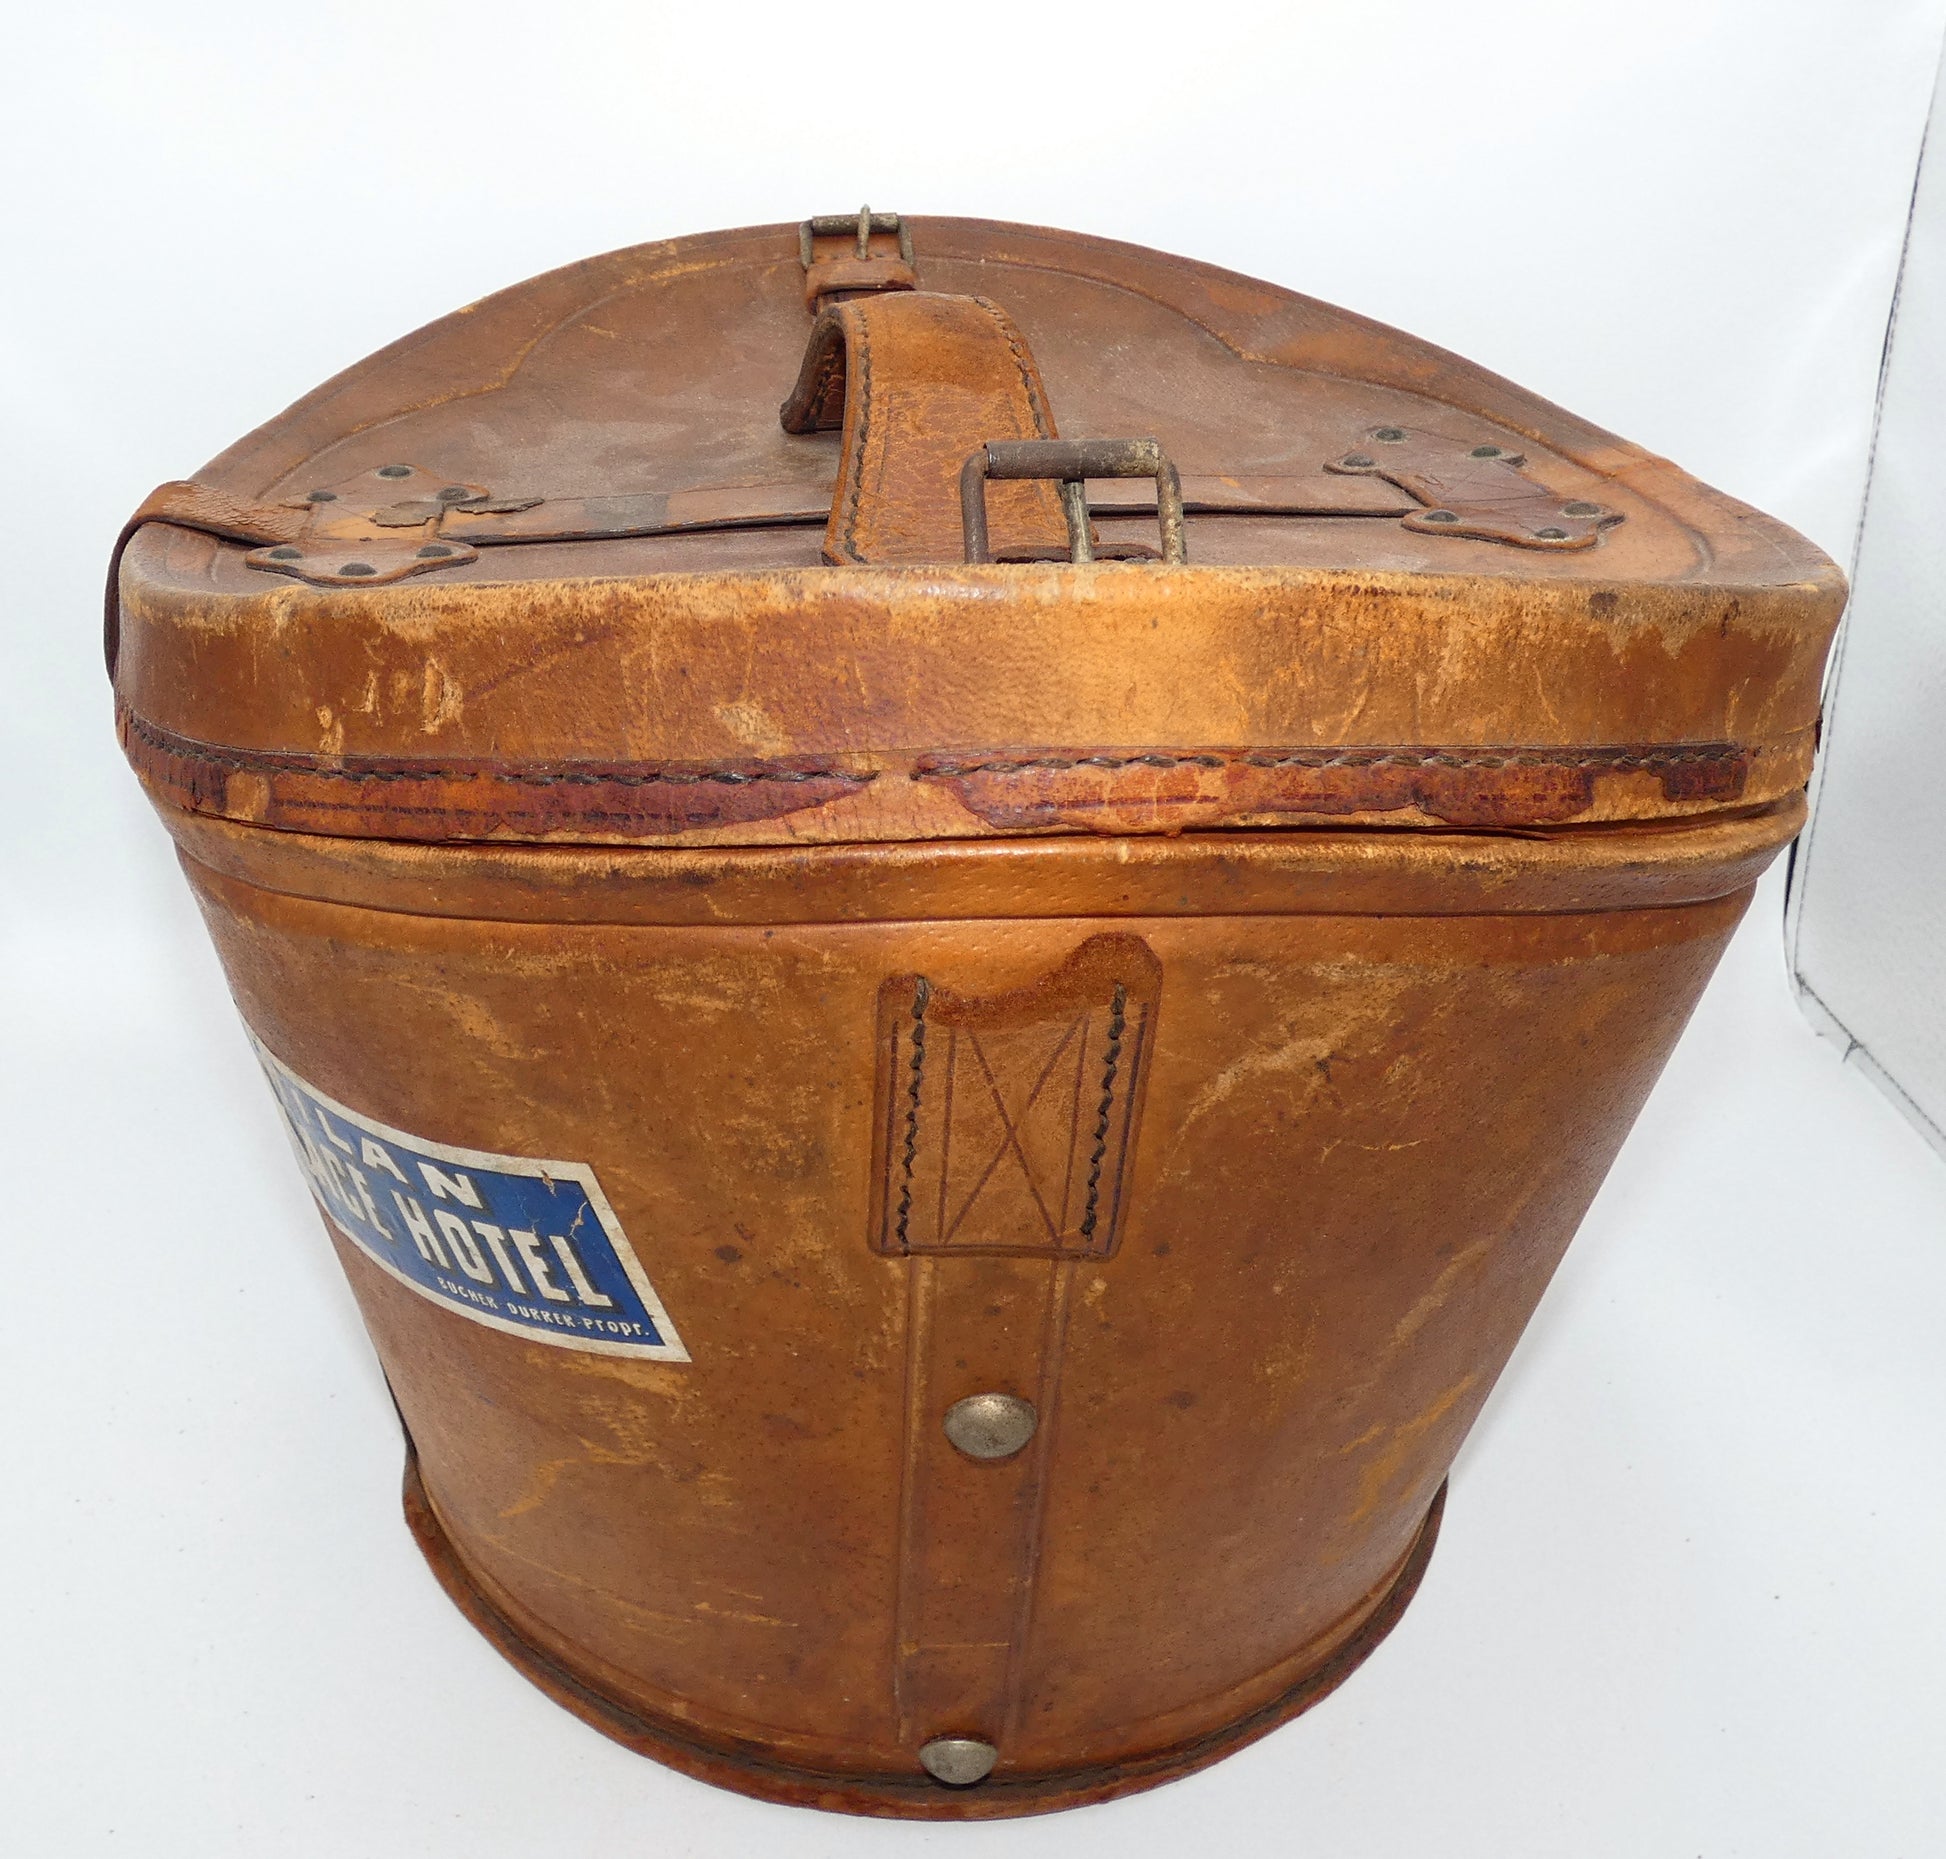 Old large brown hat box luggage - Ruby Lane